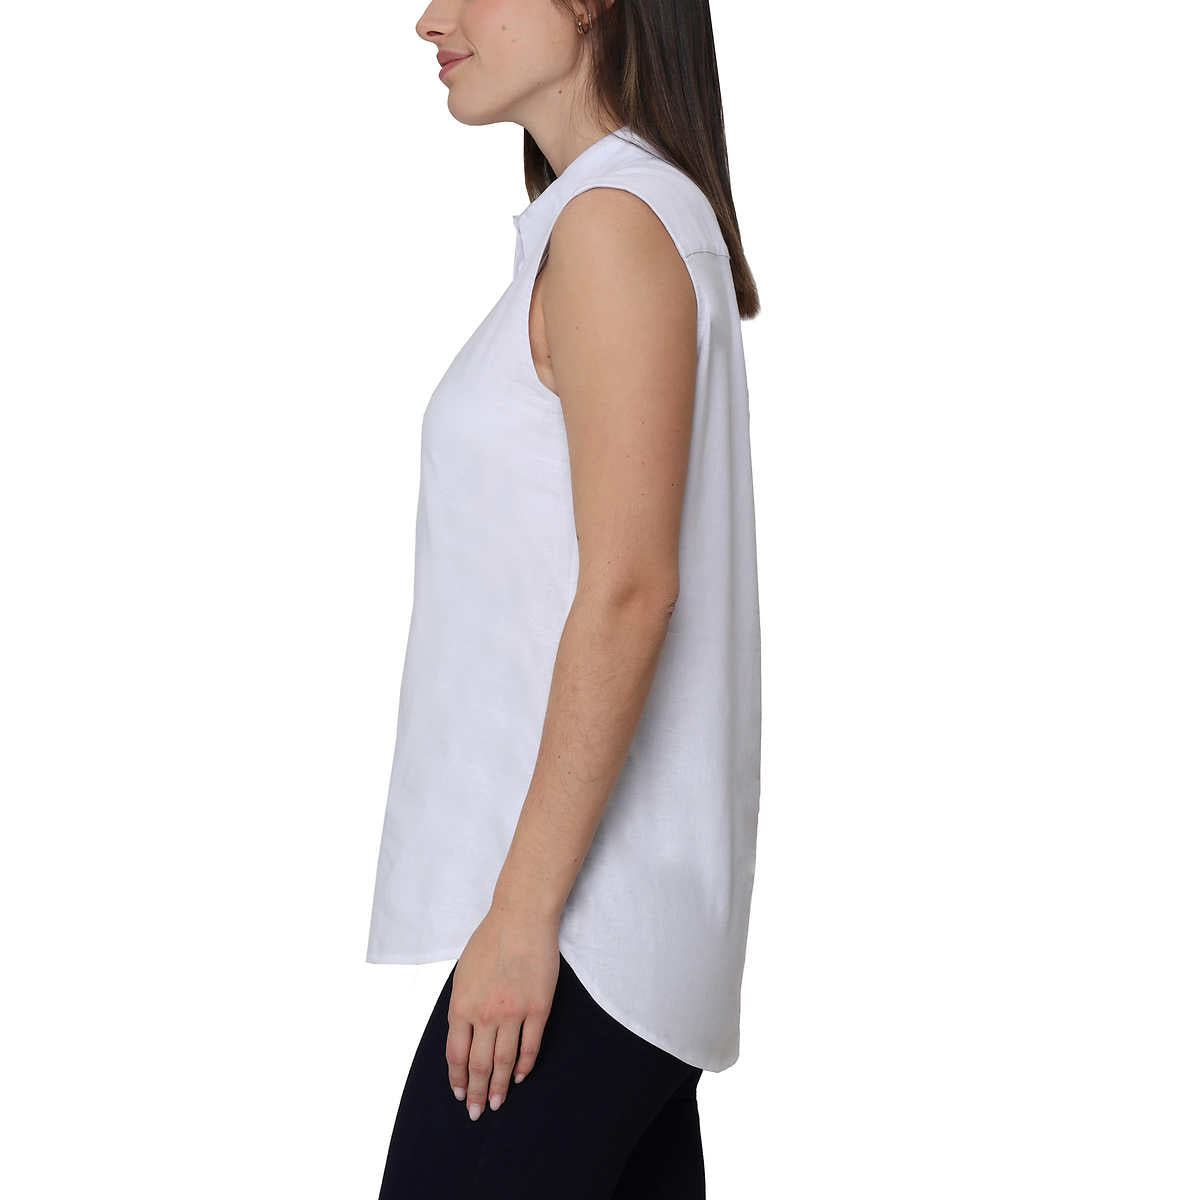 Nicole Miller Women's Linen Blend Sleeveless Top Button Front Blouse Tunic